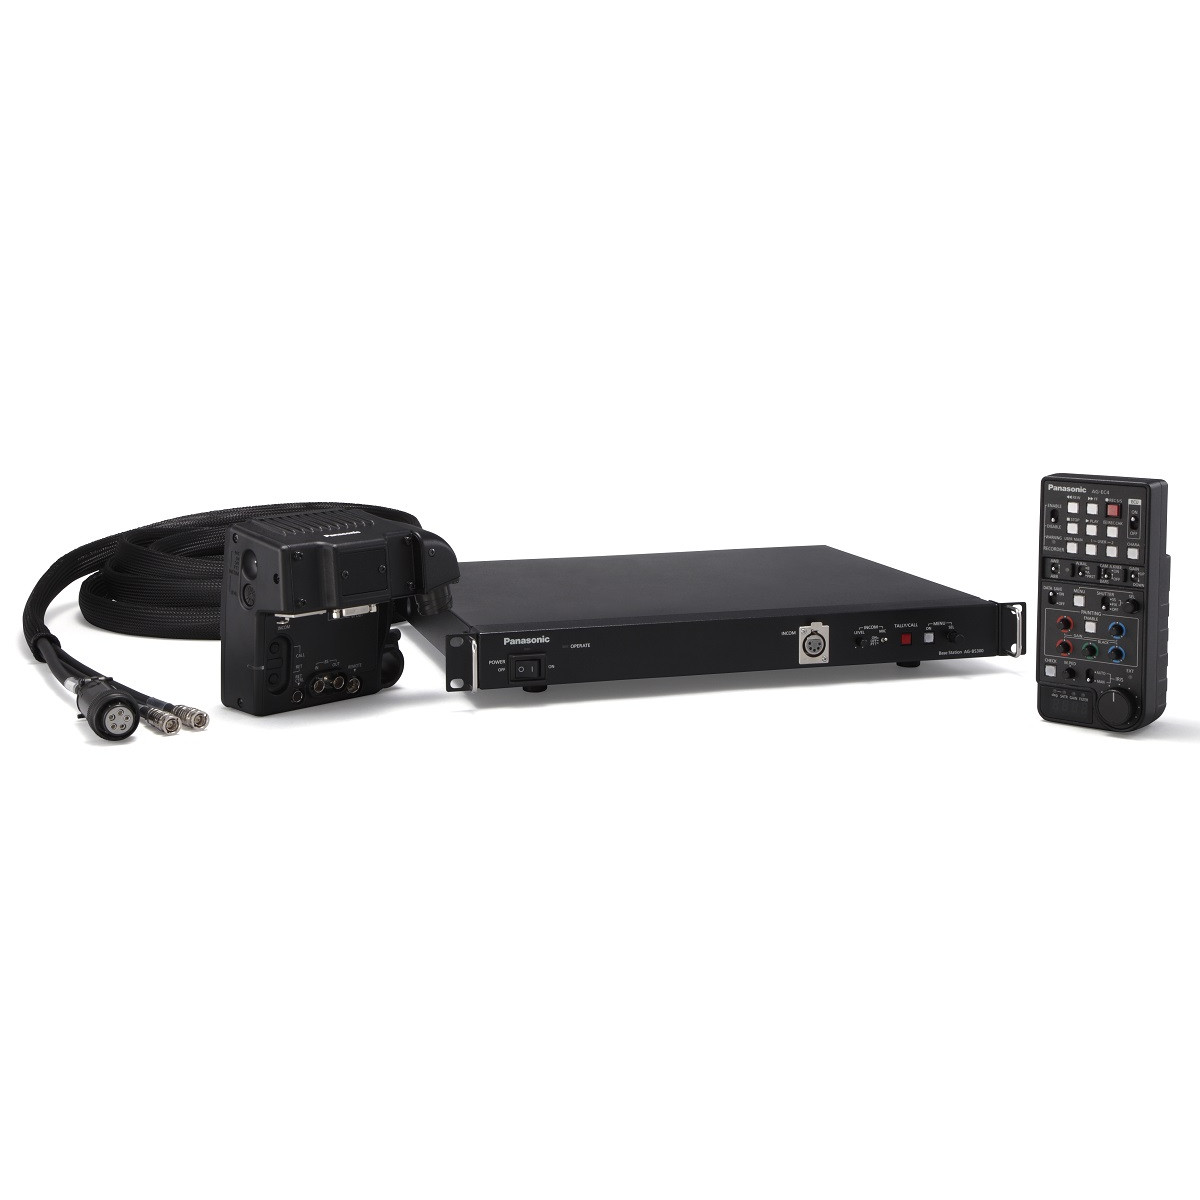 Adaptador de estación base para videocámaras P2 HD y DVCPRO HD